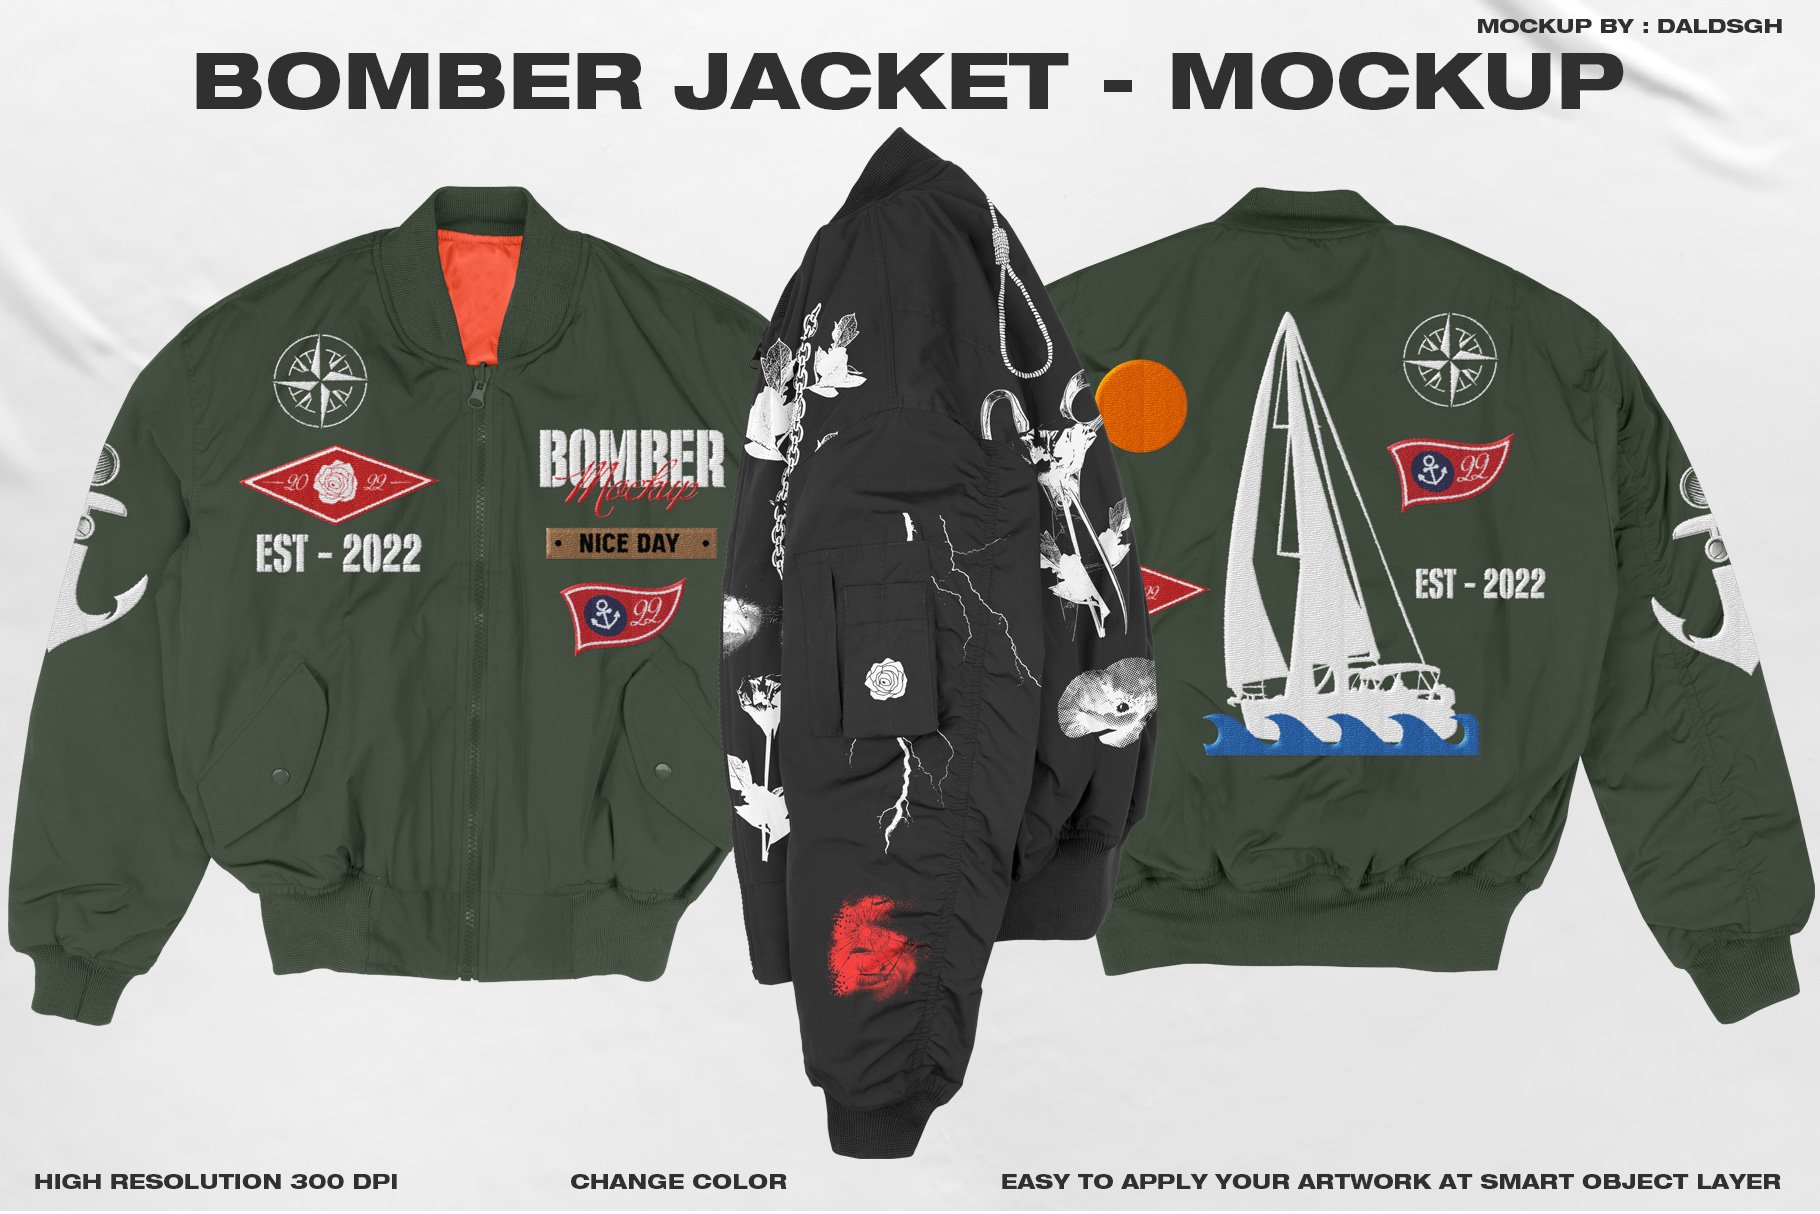 Bomber Jacket - Mockup cover image.